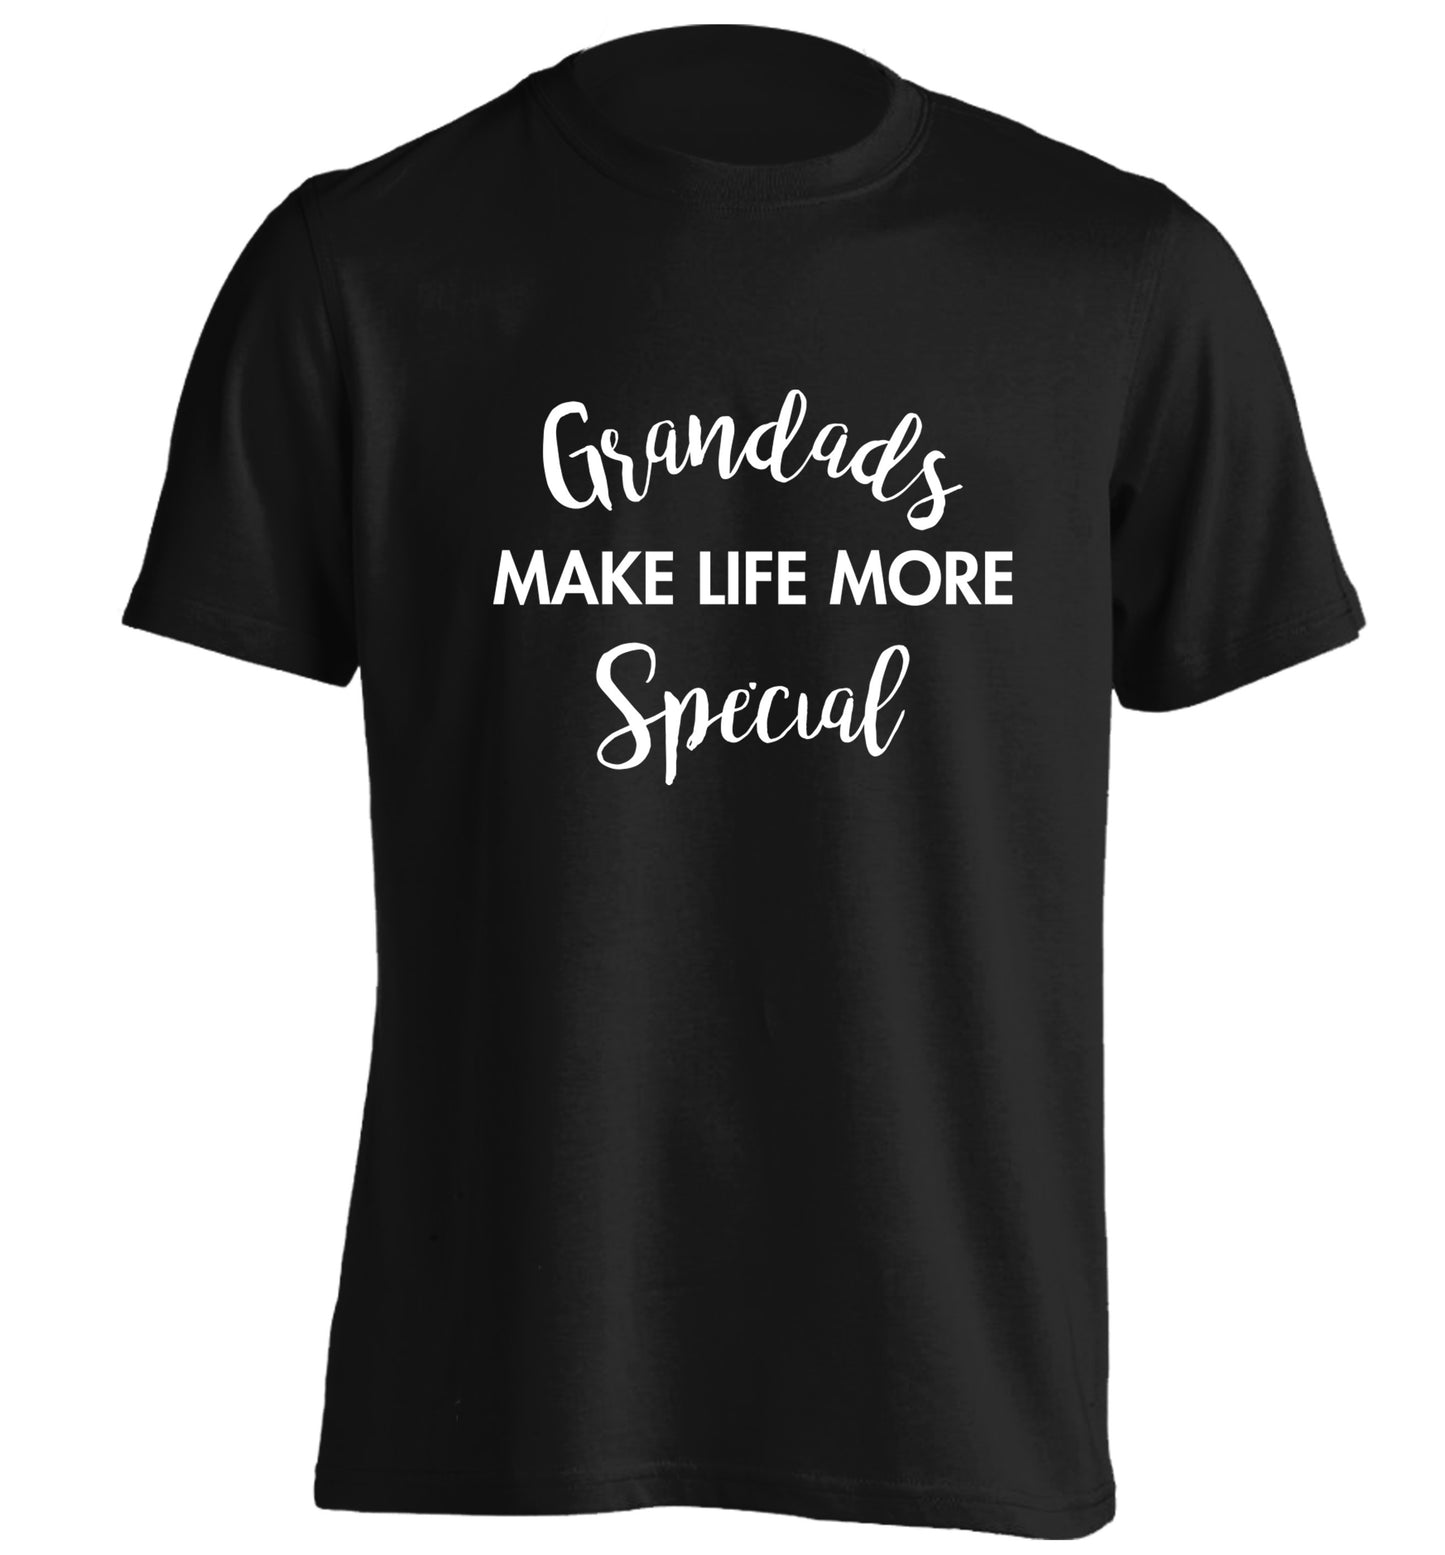 Grandads make life more special adults unisex black Tshirt 2XL